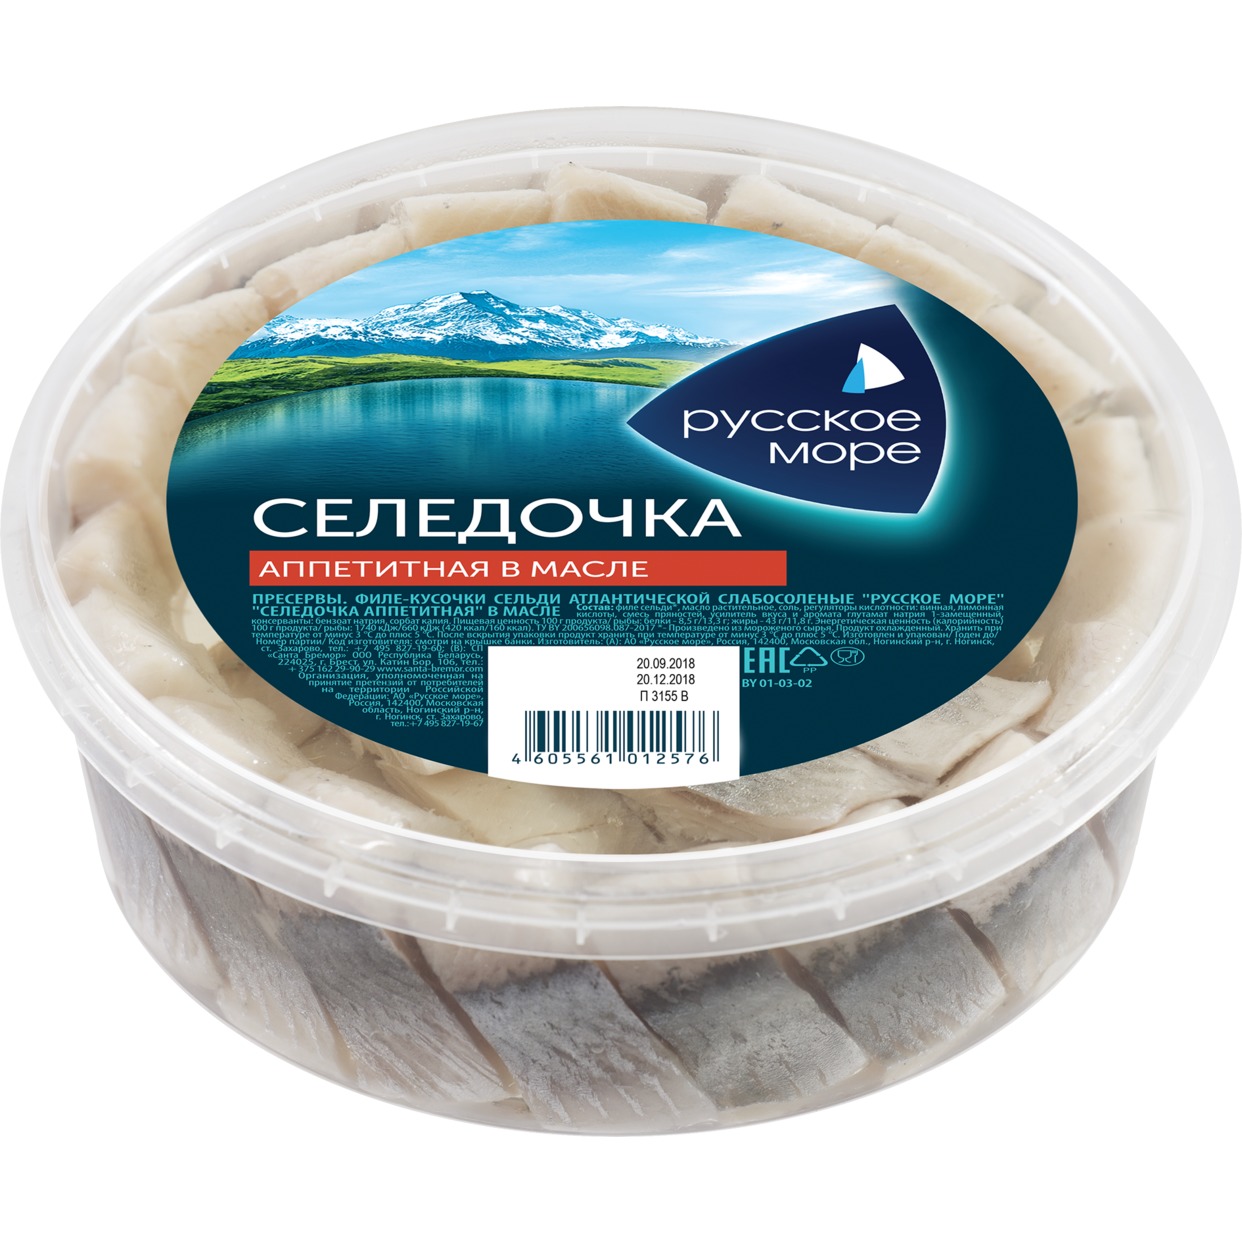 Селедочка Русское Море Аппетитная 400 г по акции в Пятерочке